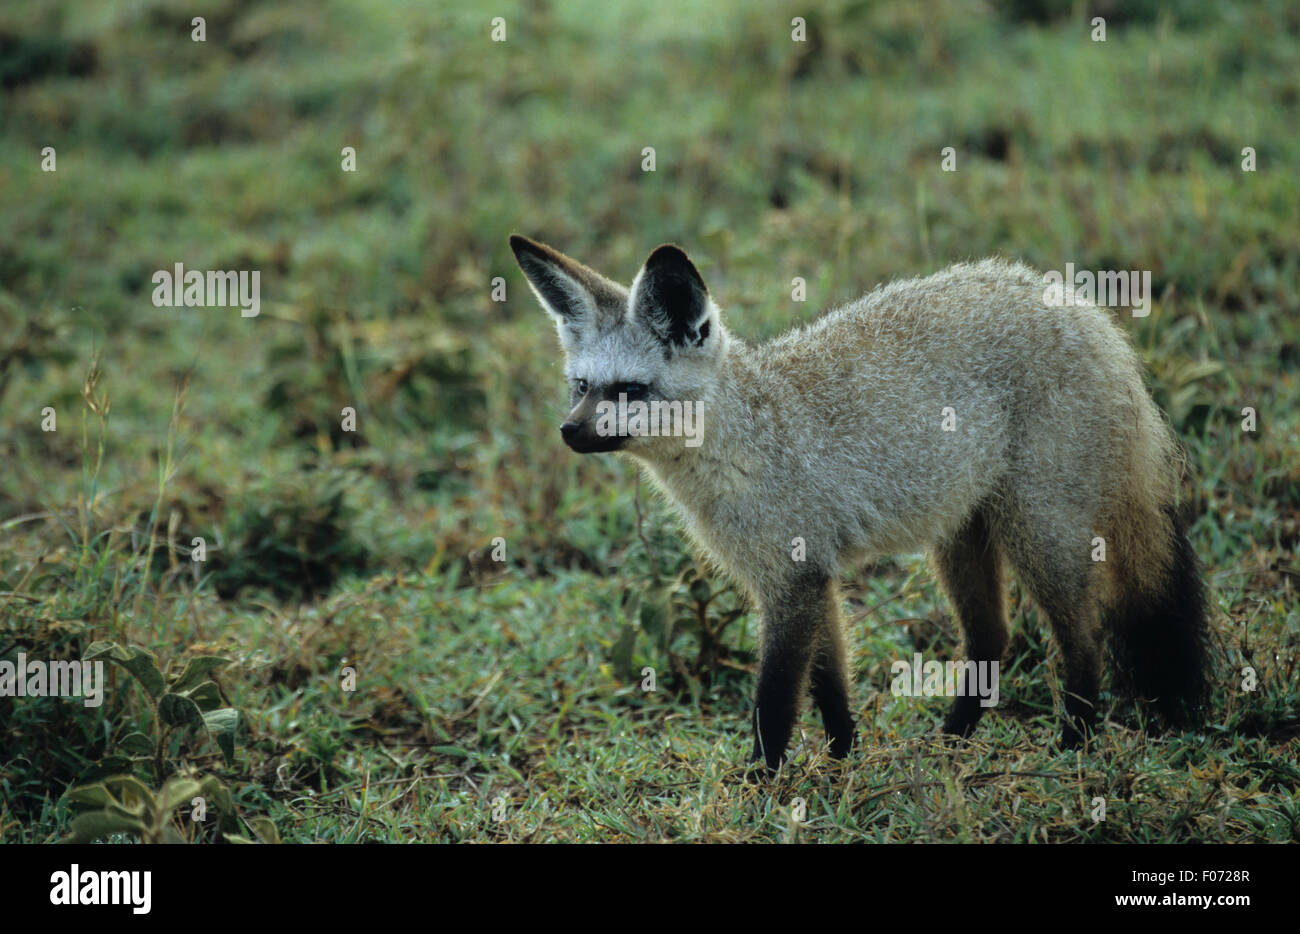 Bat Eared Fox taken in profile looking left standing on open grassland Stock Photo